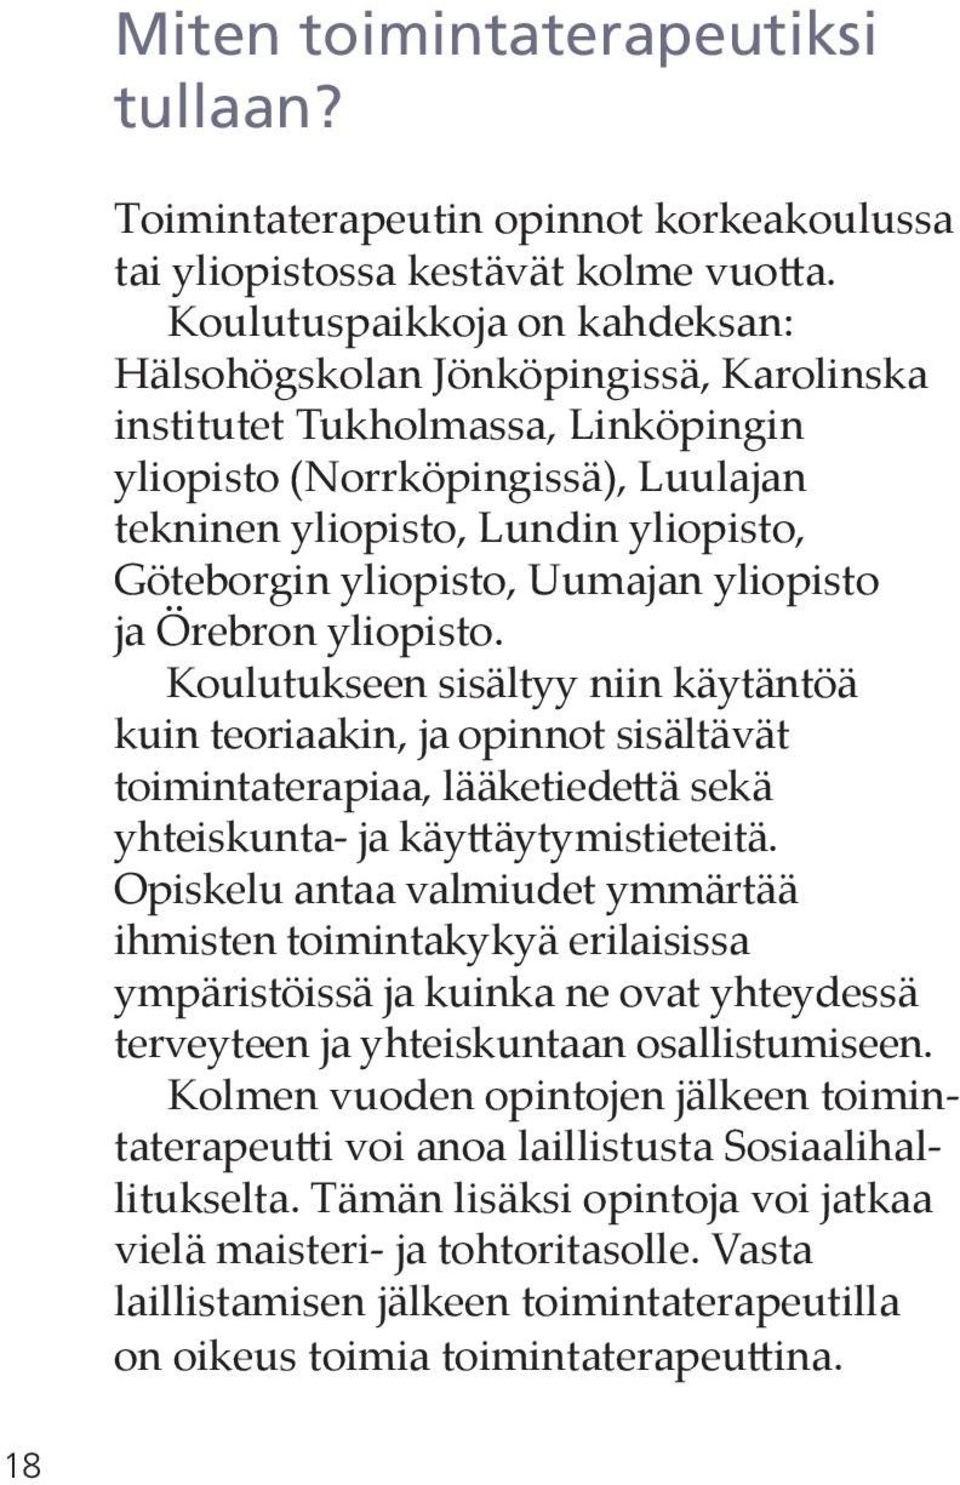 yliopisto, Uumajan yliopisto ja Örebron yliopisto.